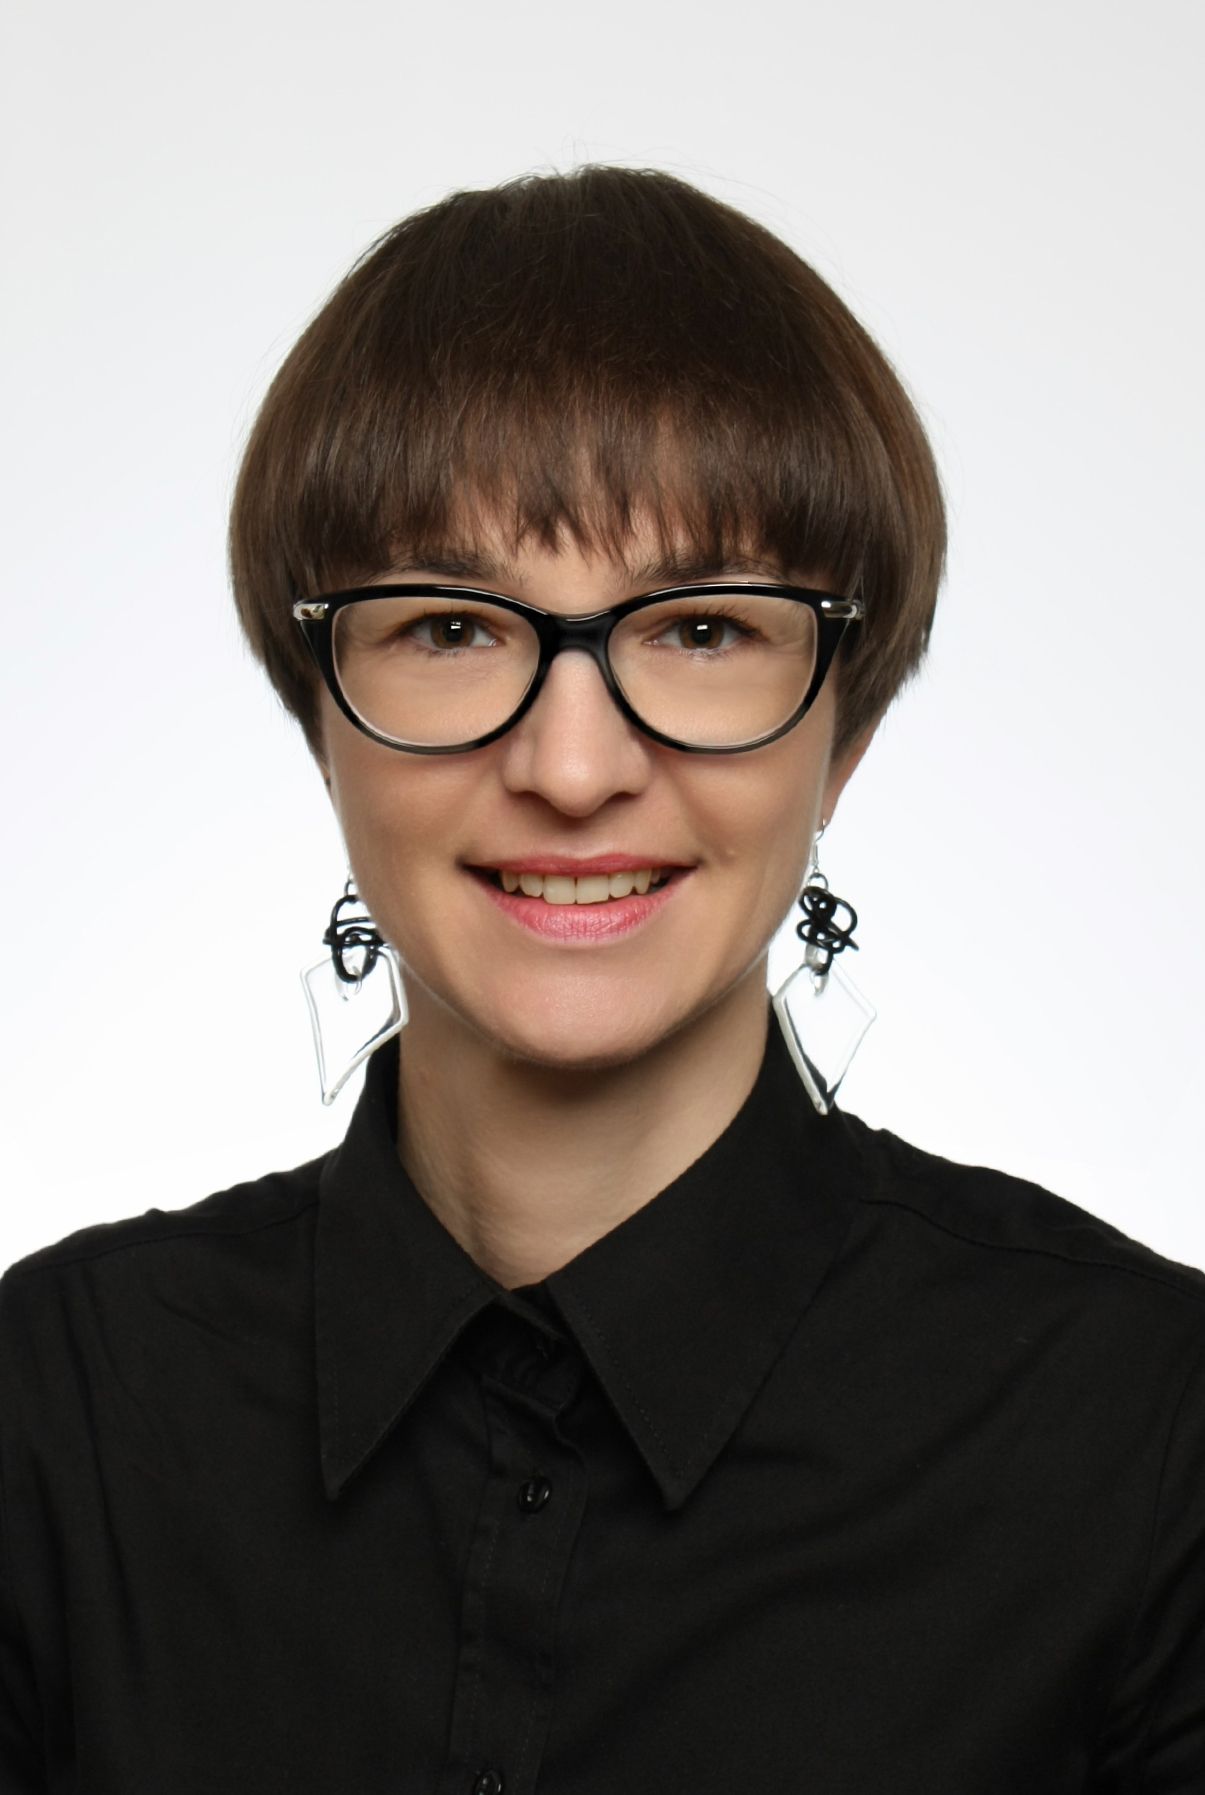 Sara Rožman, EUSA Education and Development Manager